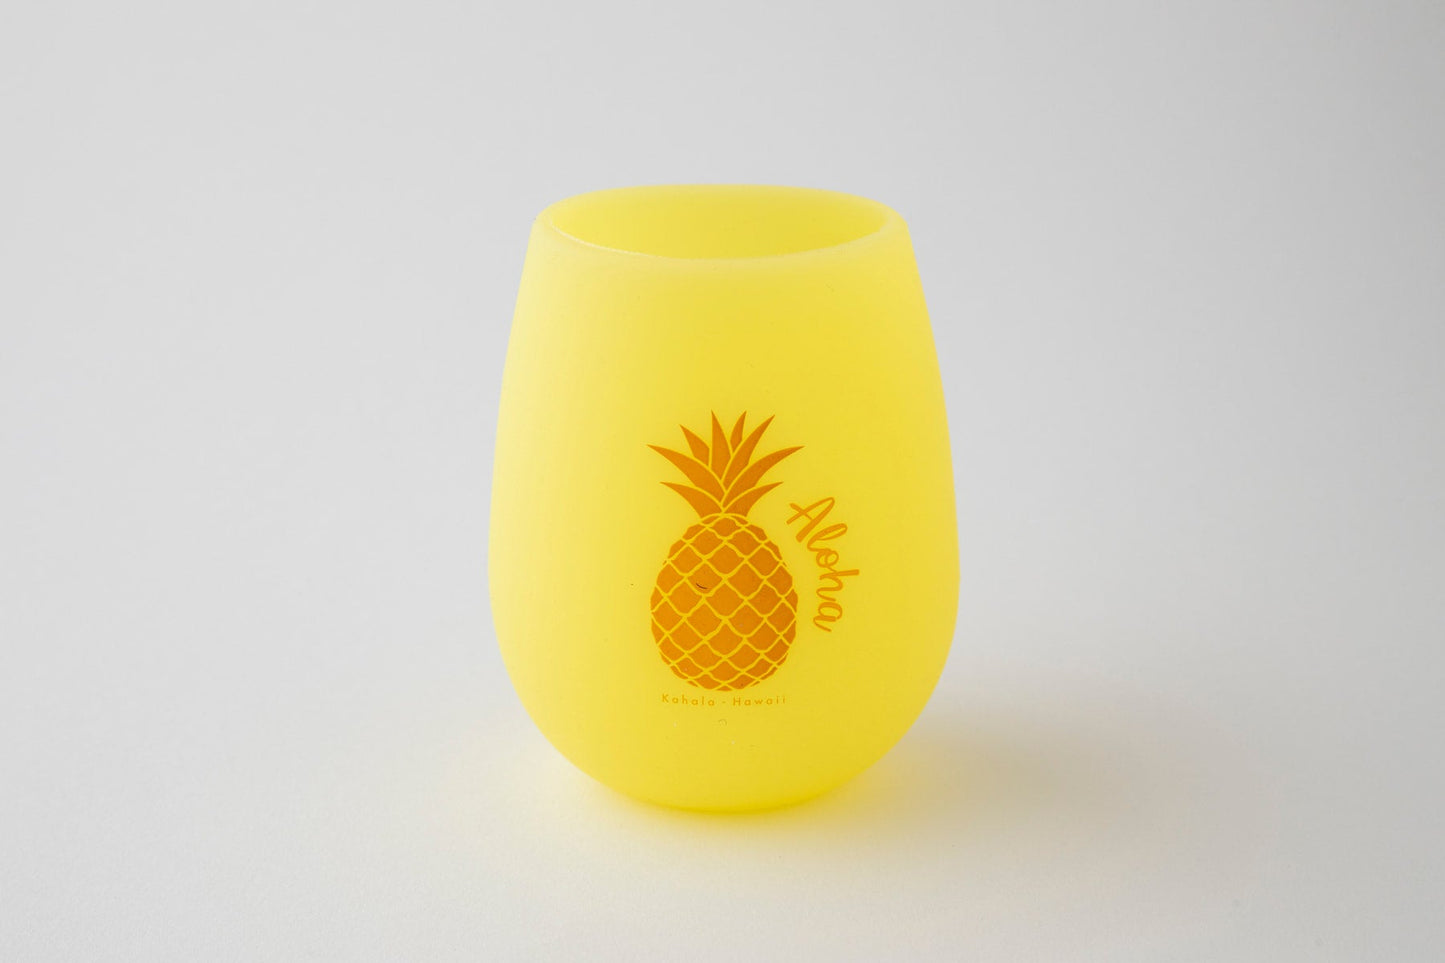 Aloha Pineapple Drinking Cup